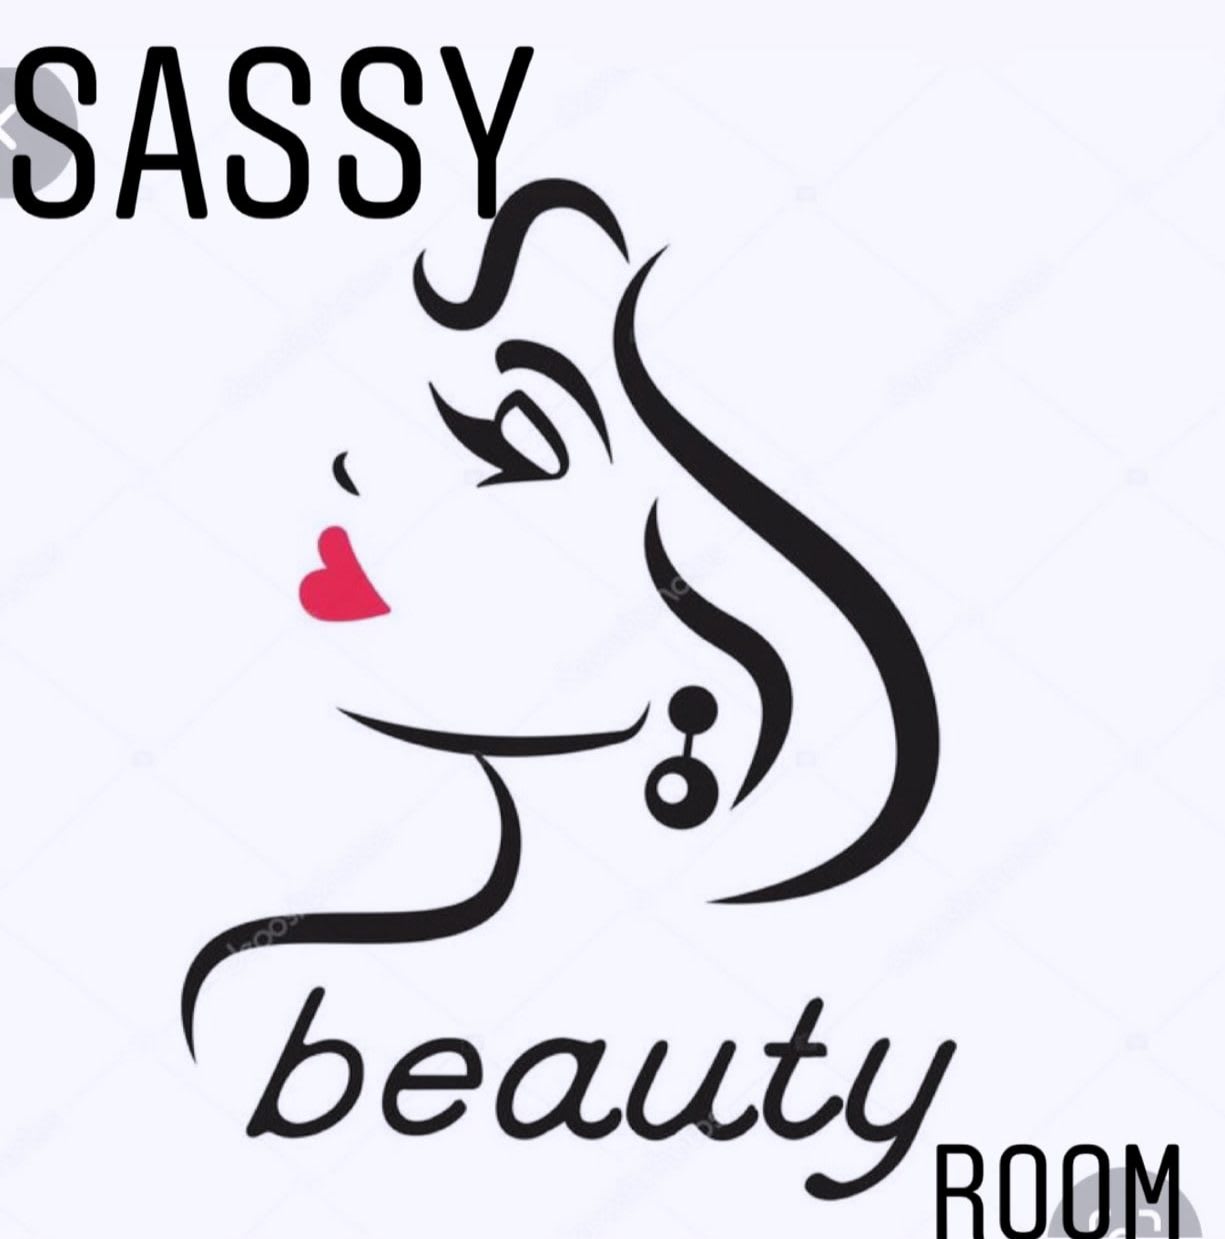 Sassy Beauty Room